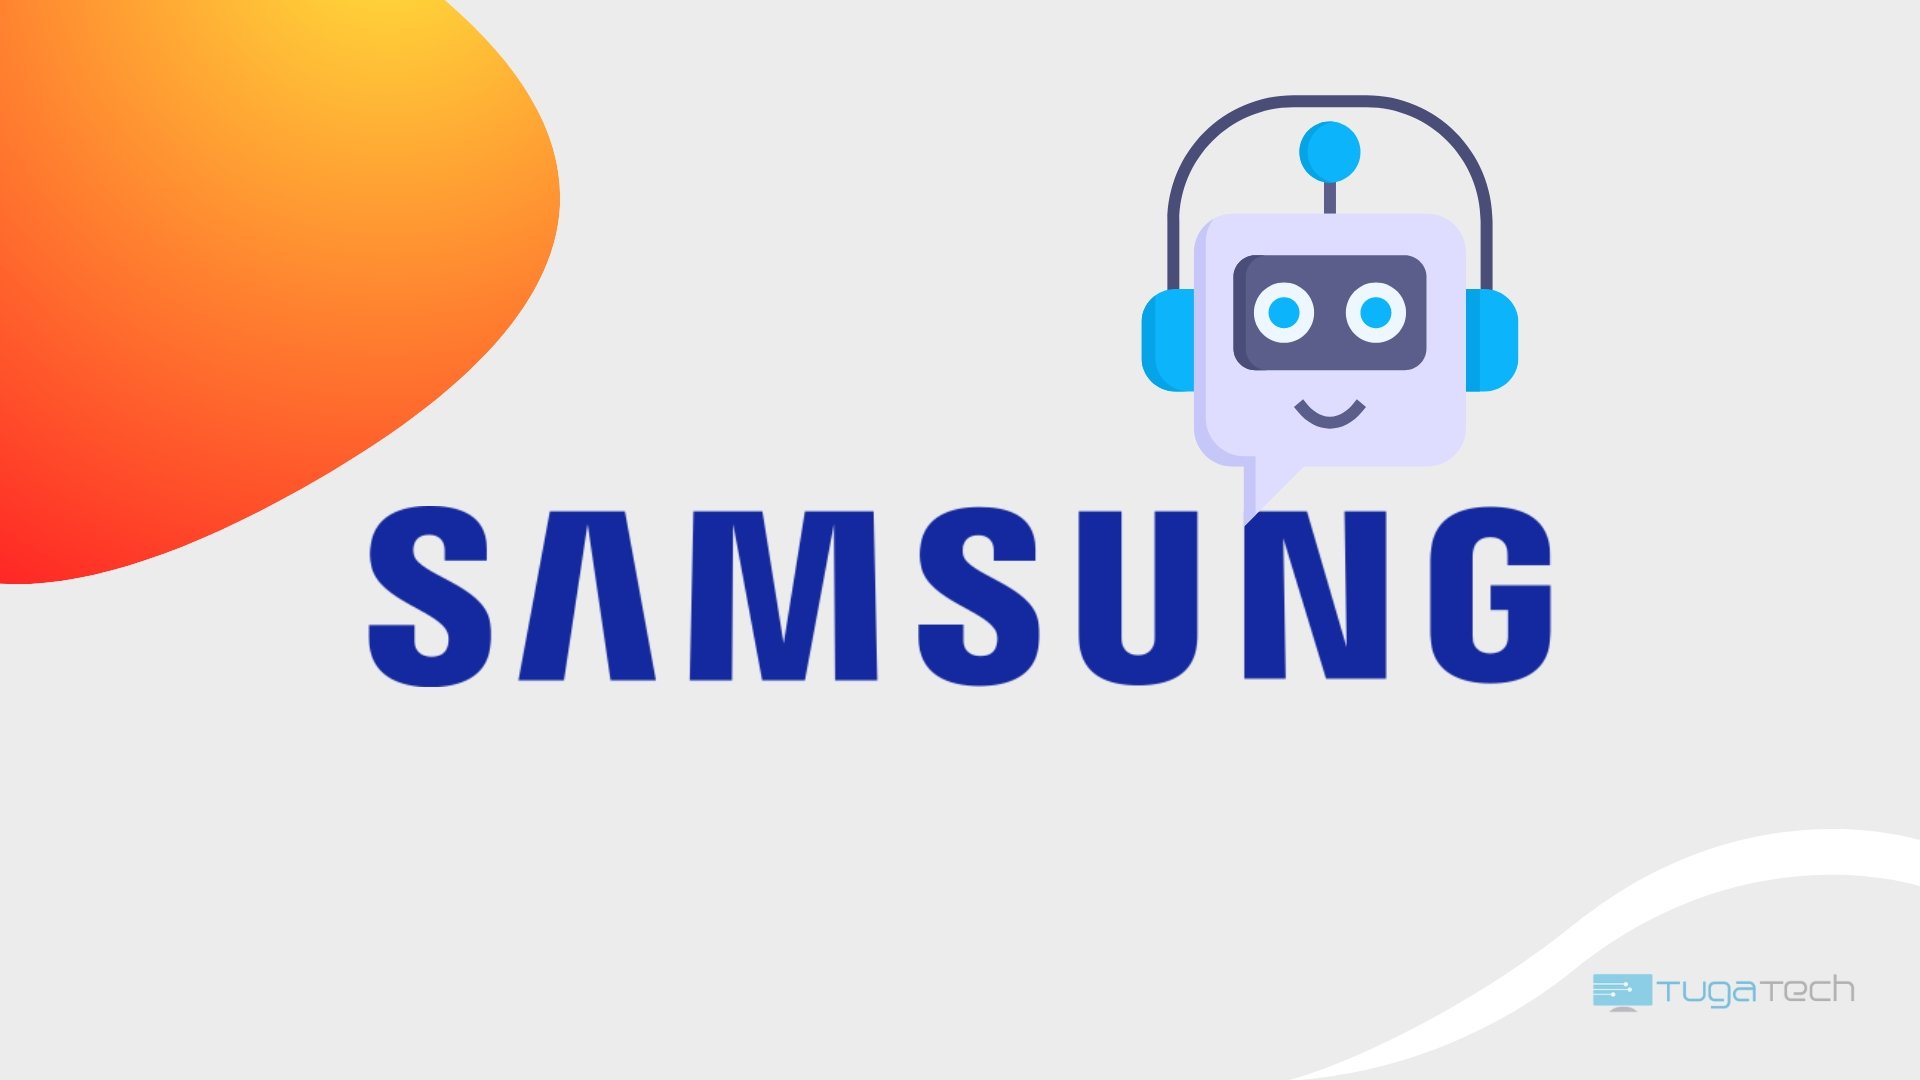 Samsung com chatbot no topo do logo